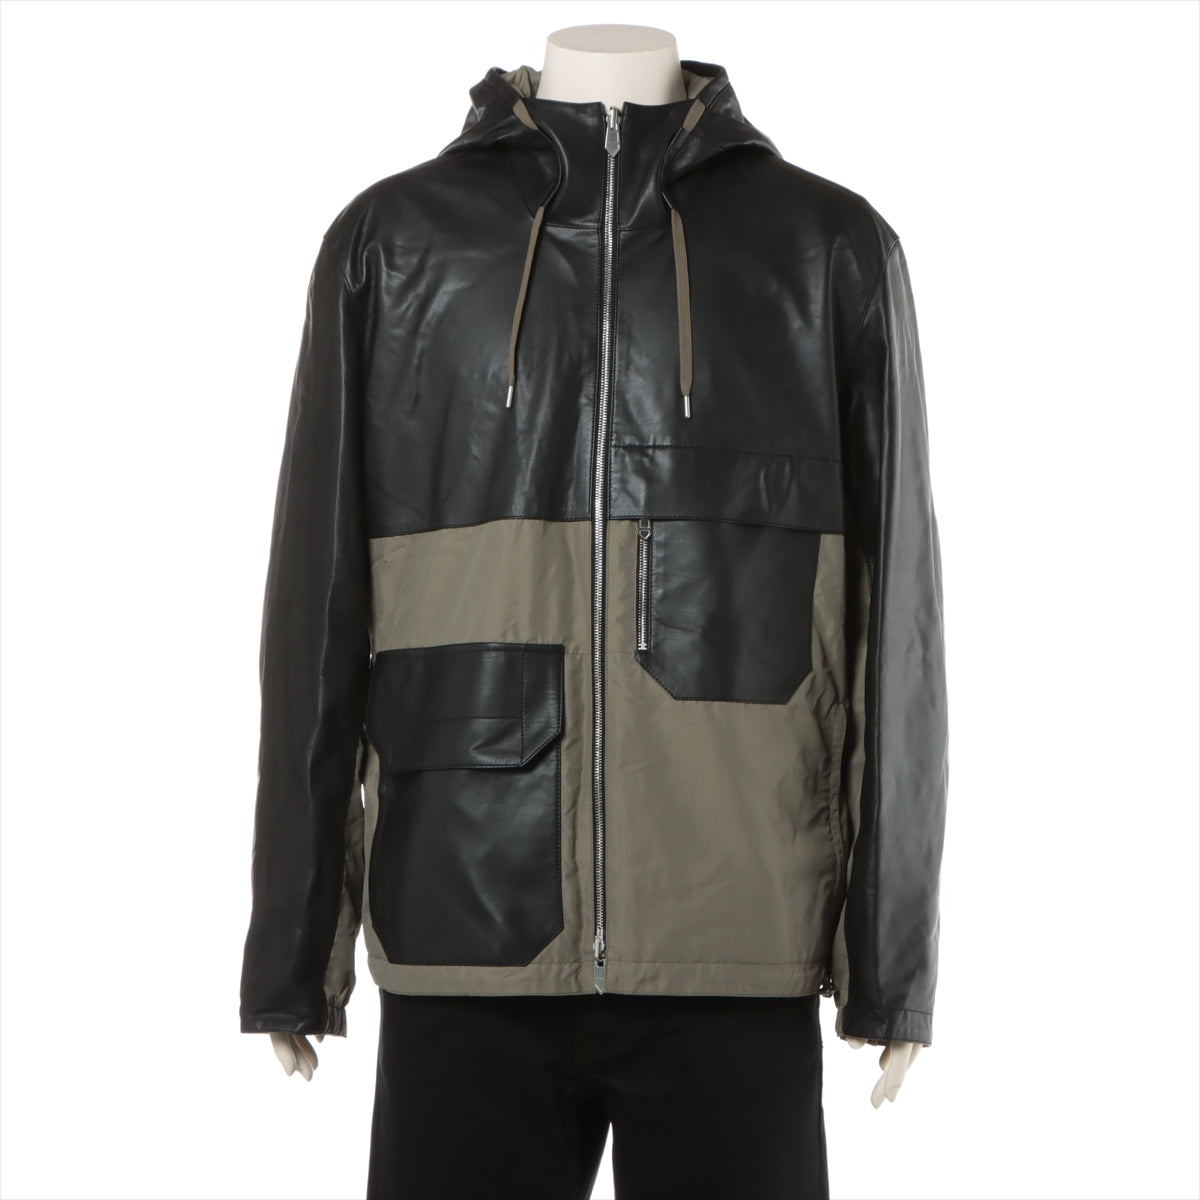 Hermès Nylon & Leather Jacket 48 Men's Black x khaki  Reversible